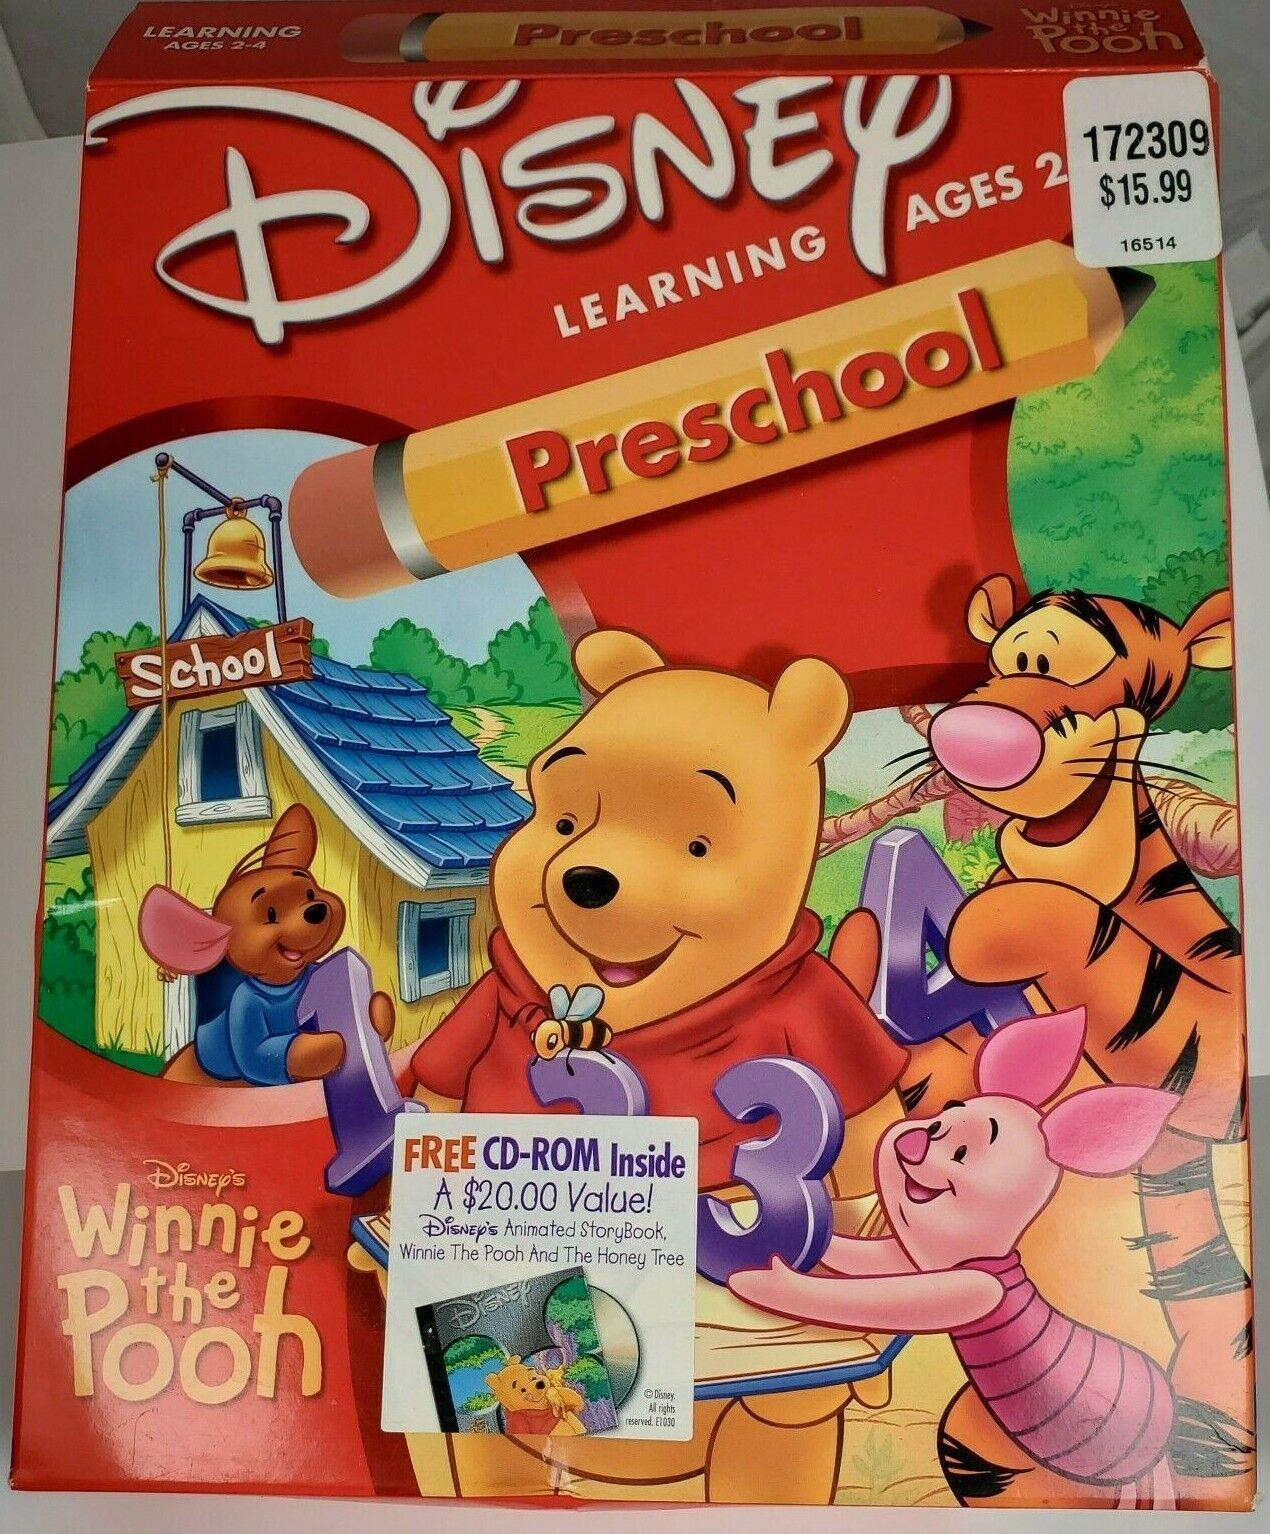 Vintage Disney Preschool Winnie the Pooh 1 2 3 CD-ROM